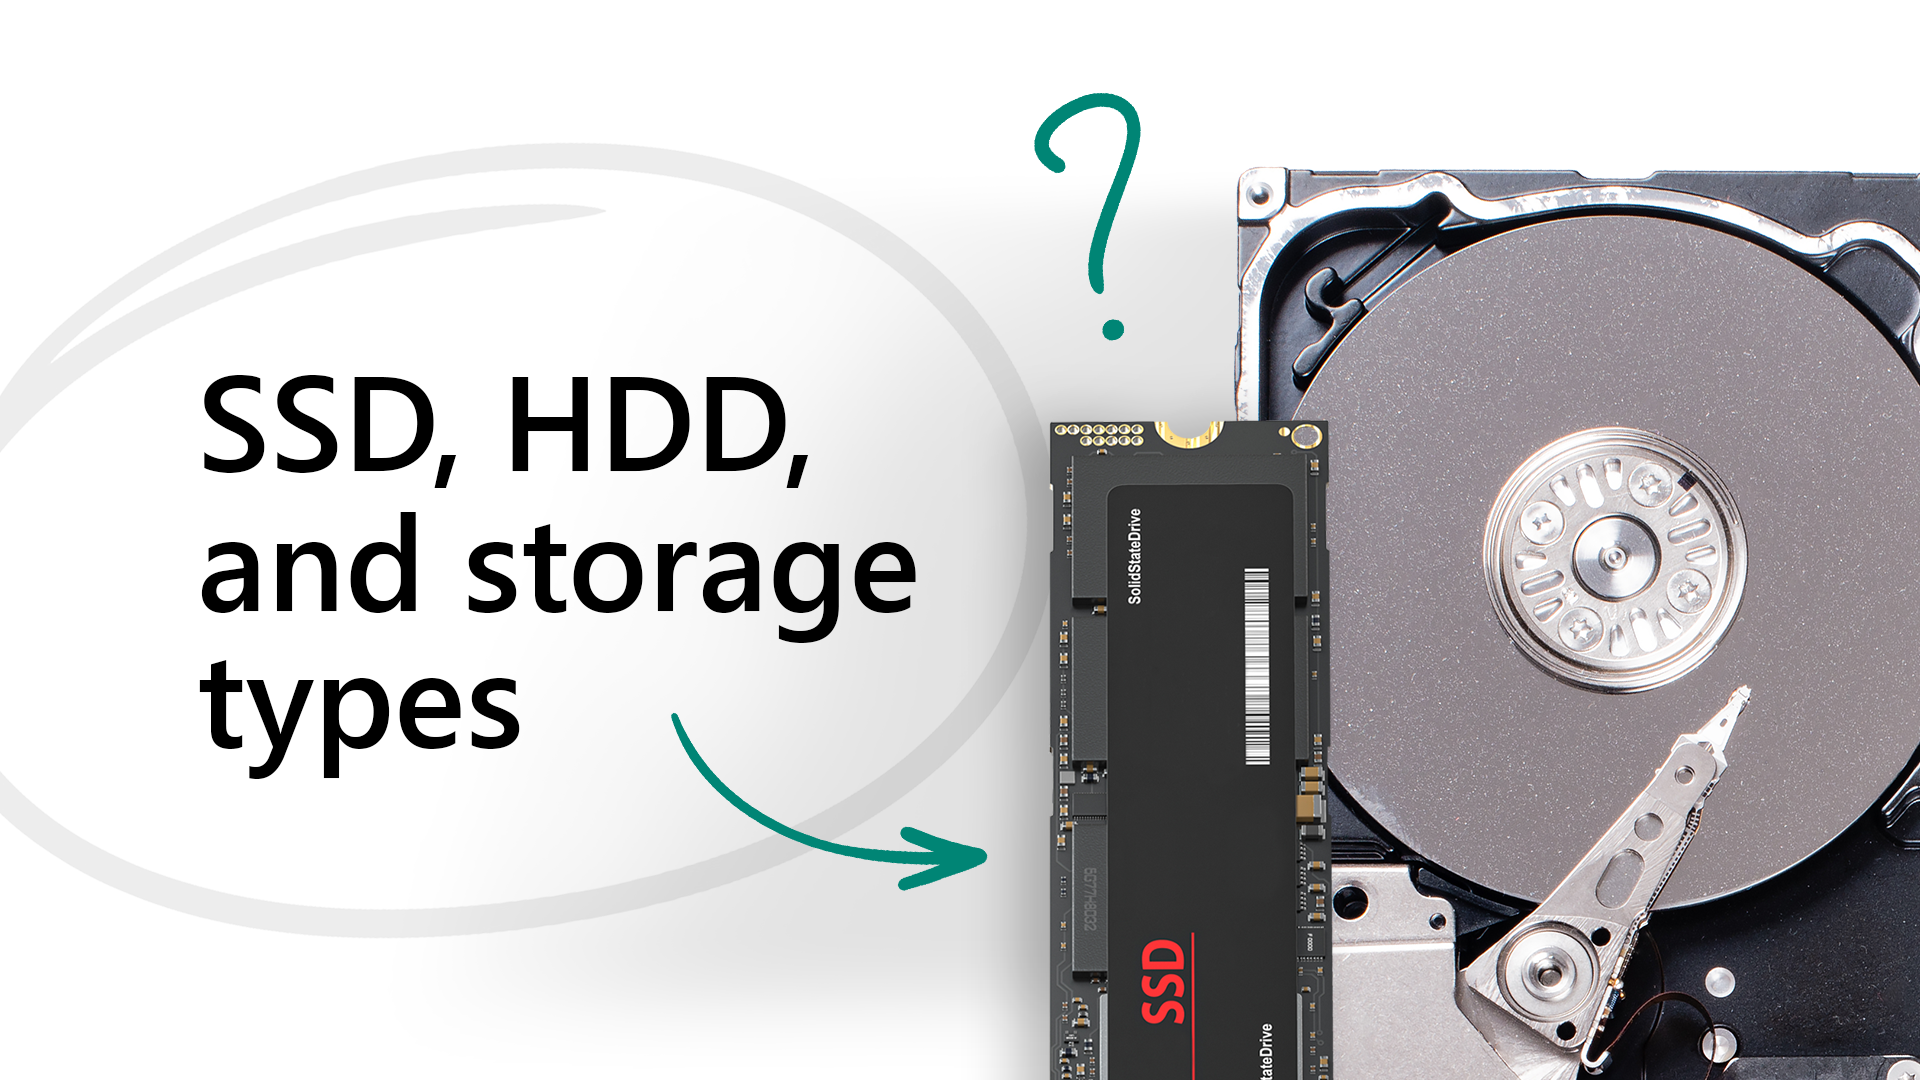 SSD: ¿Qué es y para qué sirve? - Definición